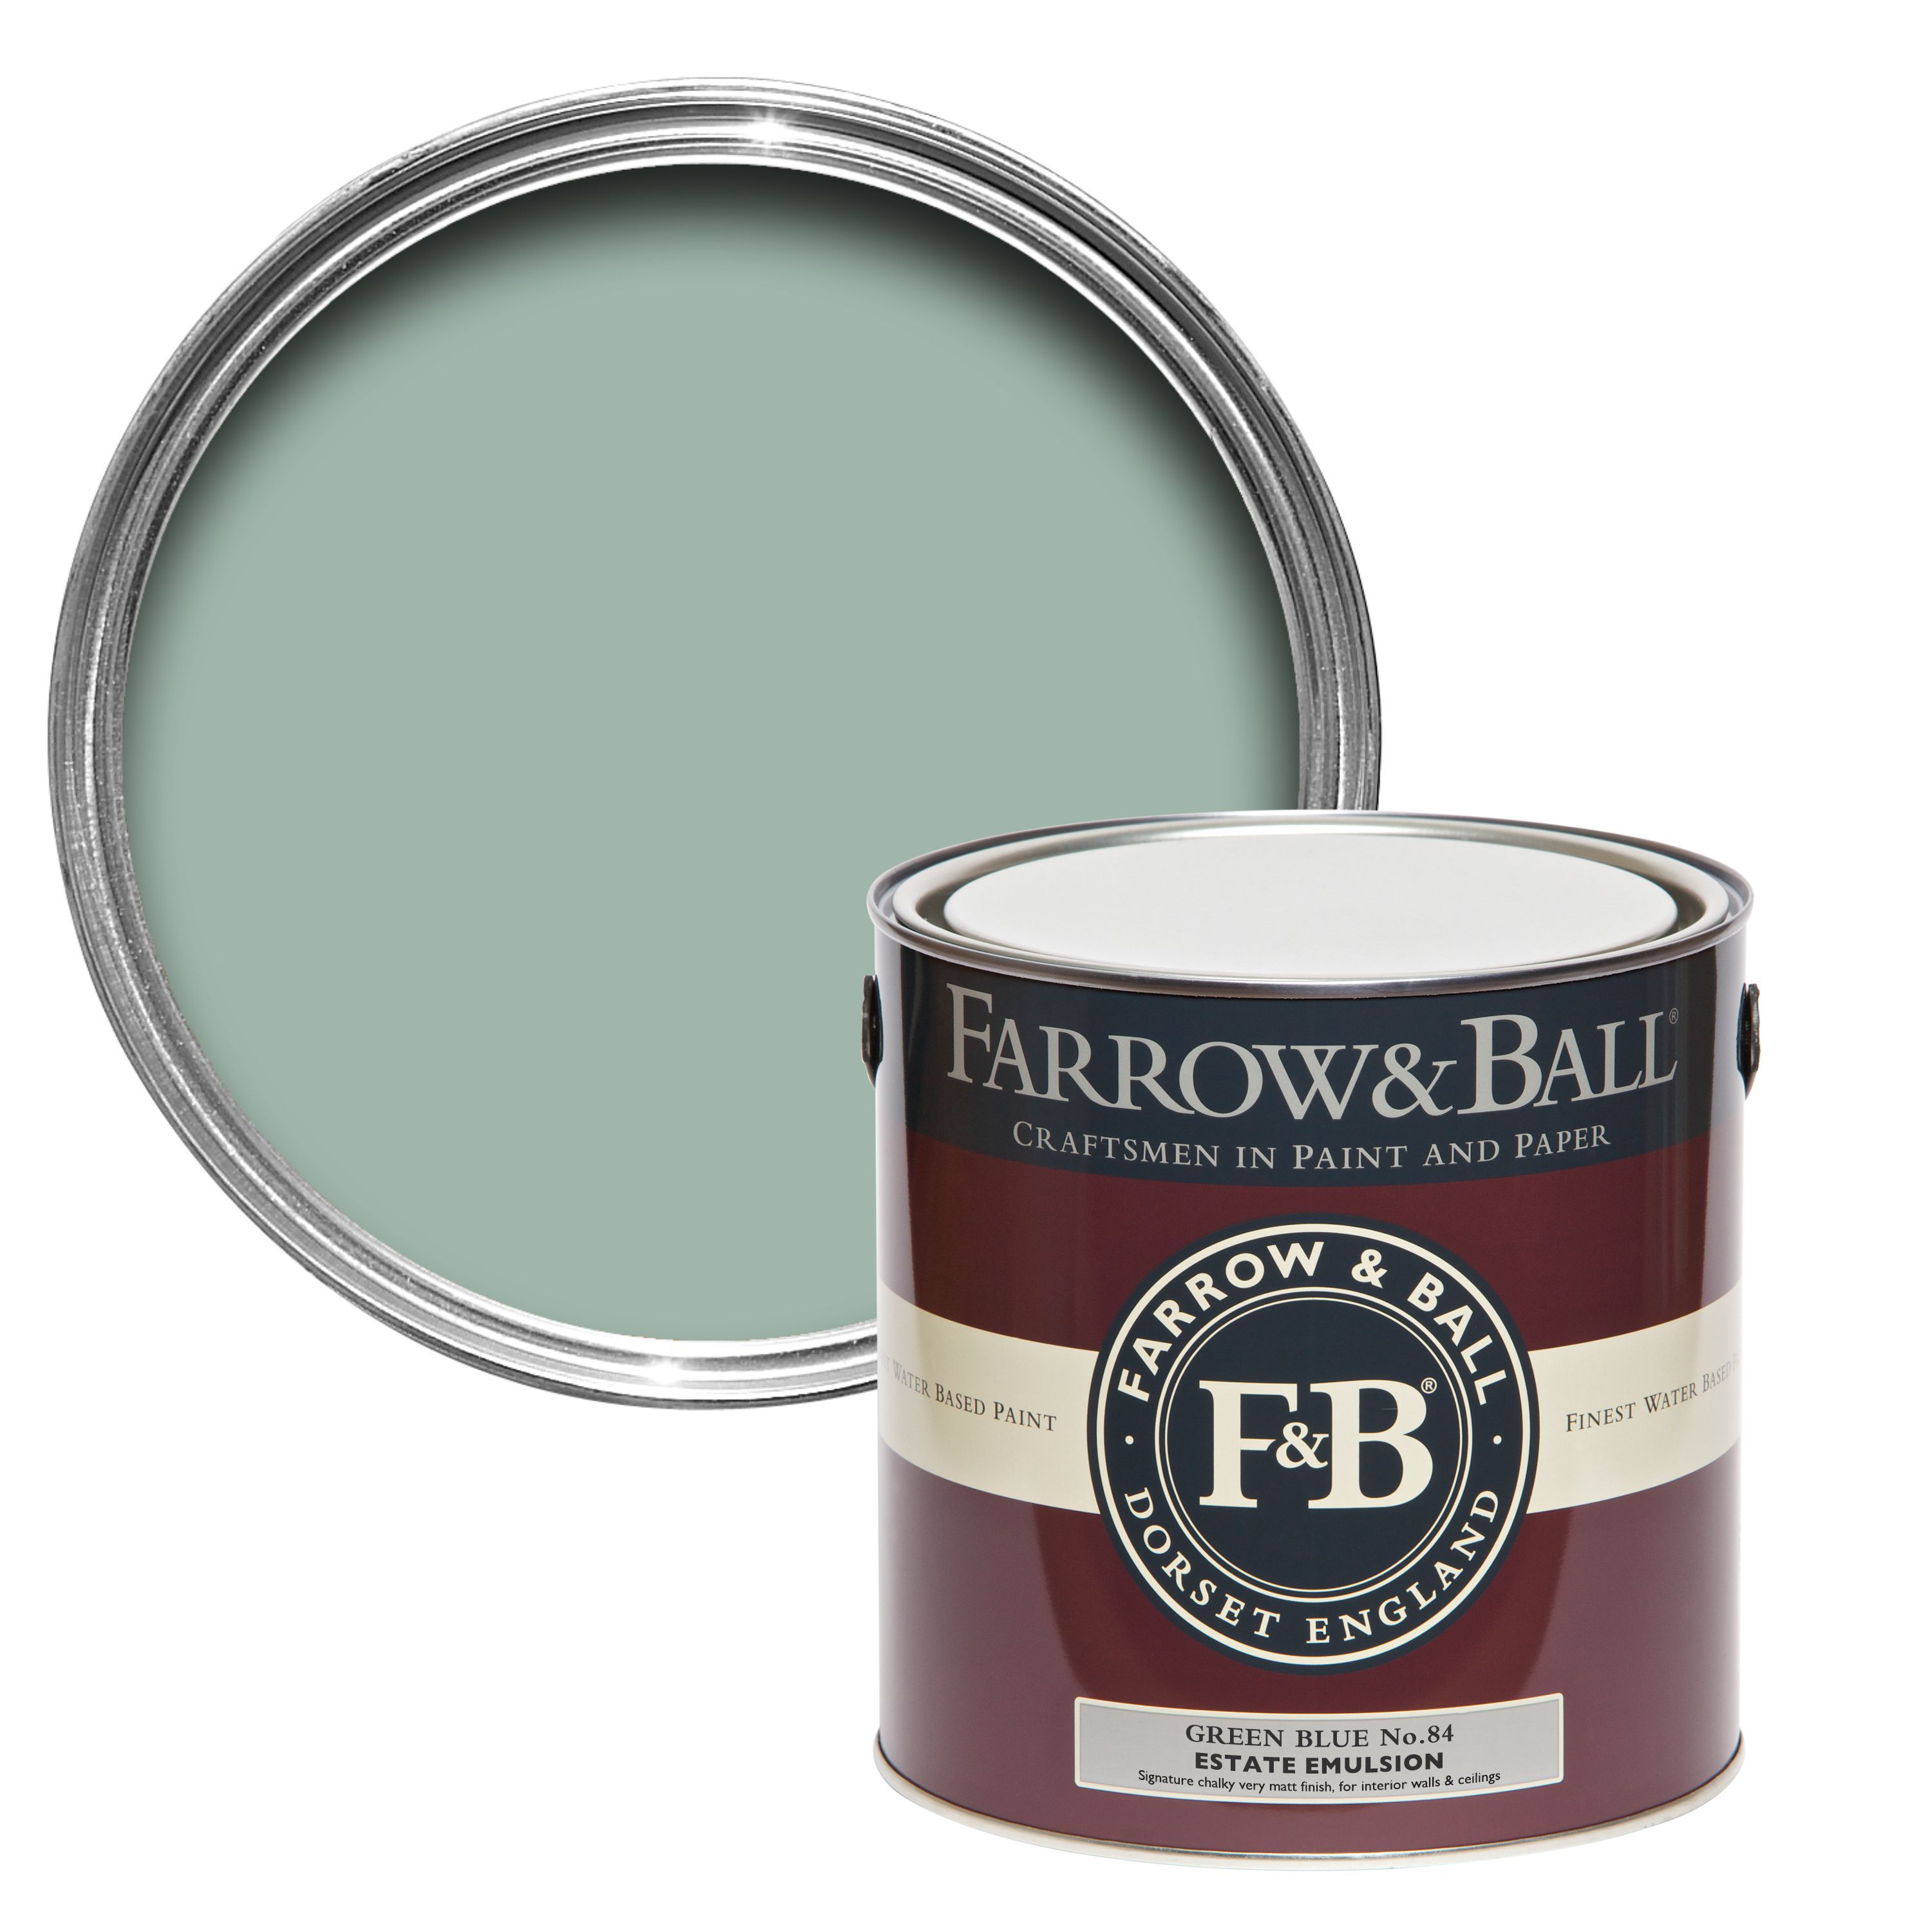 Farrow & Ball Estate Green blue No.84 Matt Emulsion paint, 2.5L Tester pot